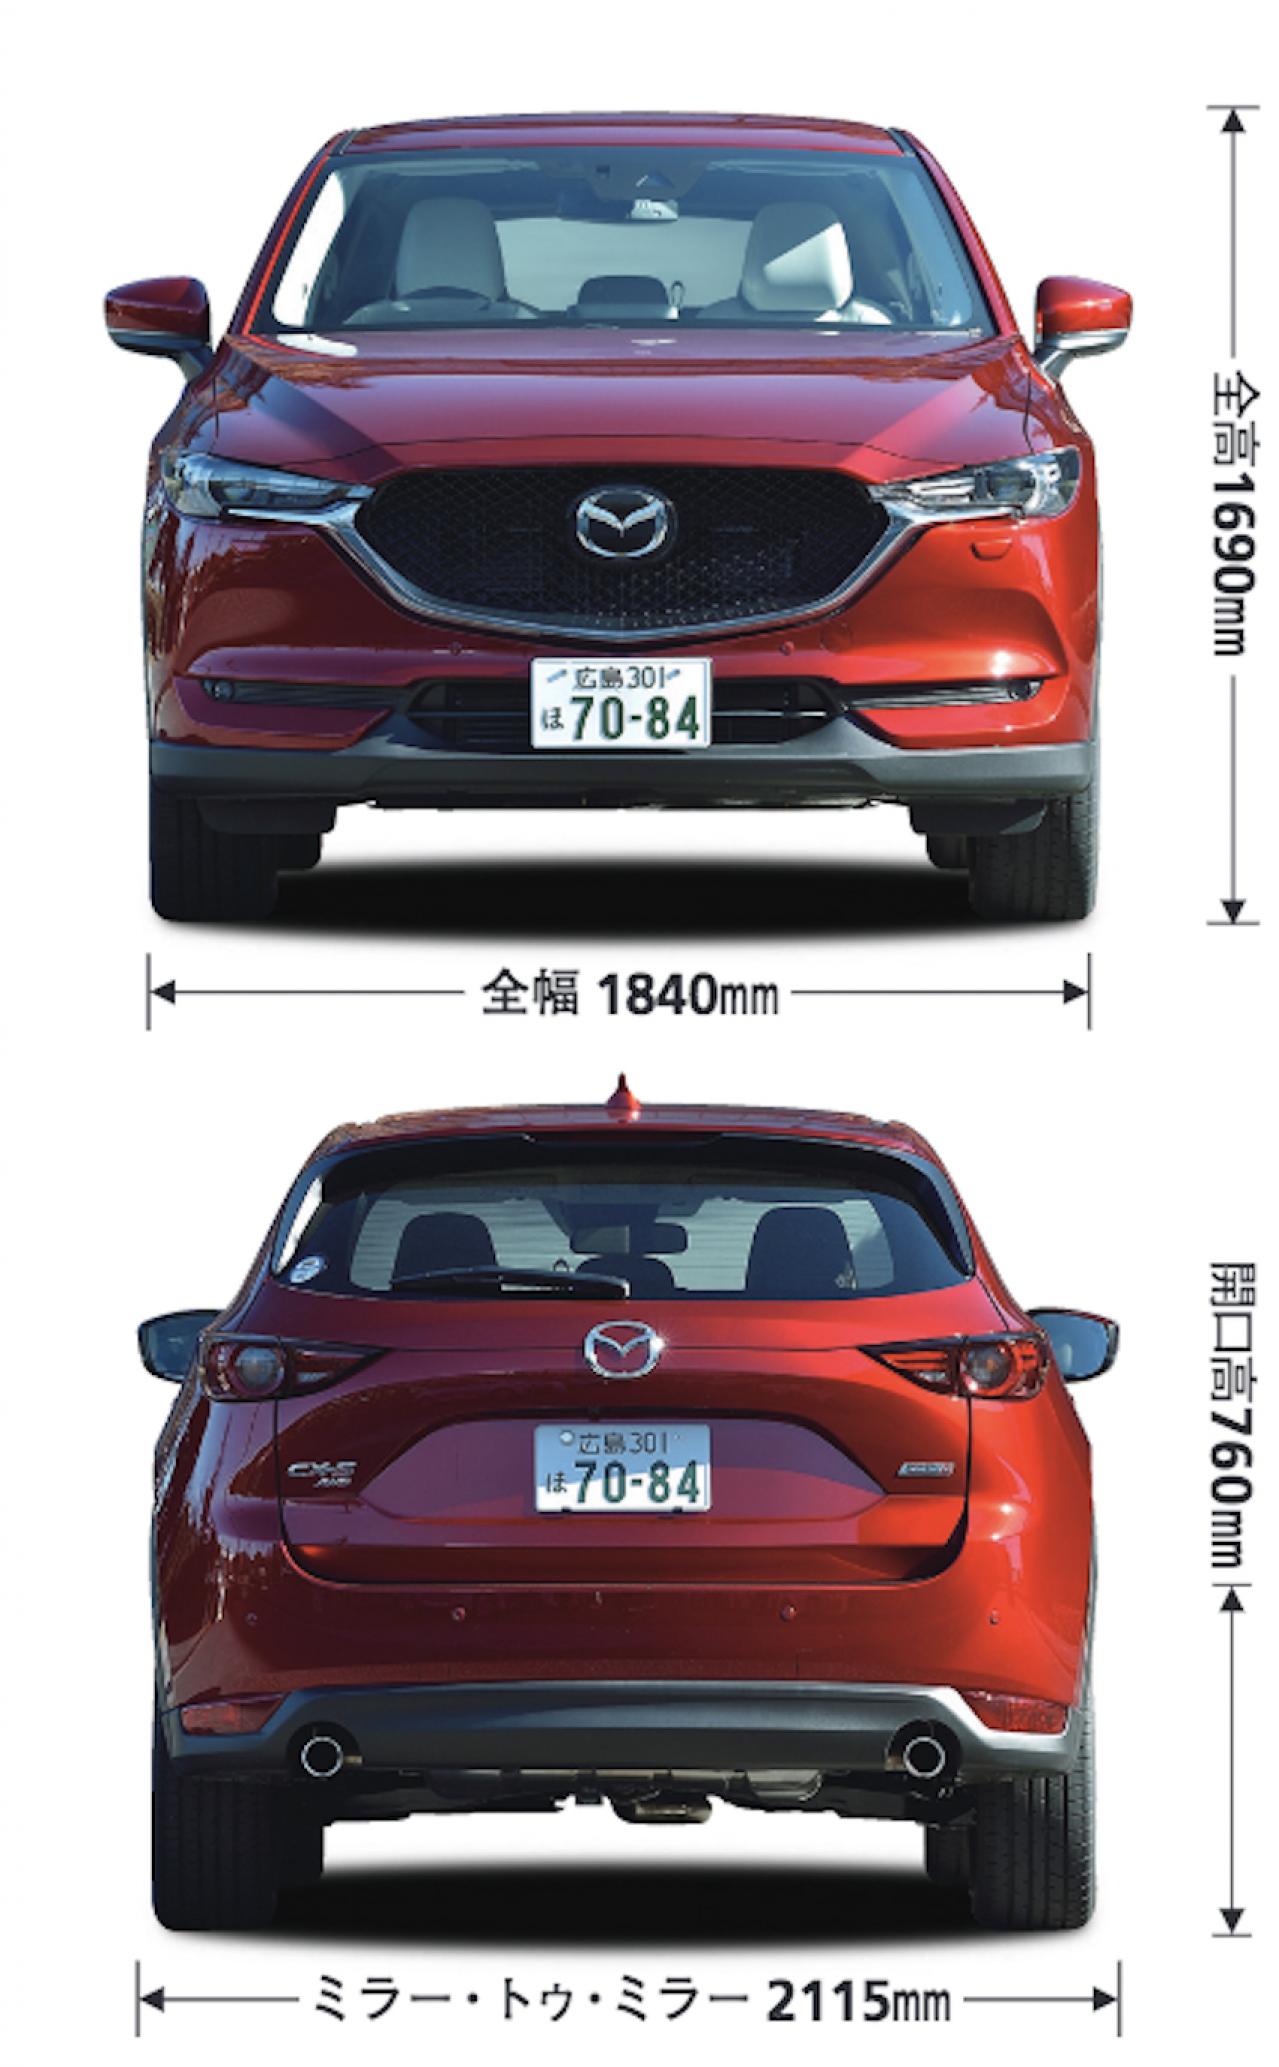 マツダ Mazda ｃｘ ５ Suv クロカン 新型自動車カタログ 価格 試乗インプレ 技術開発 Motor Fan モーターファン